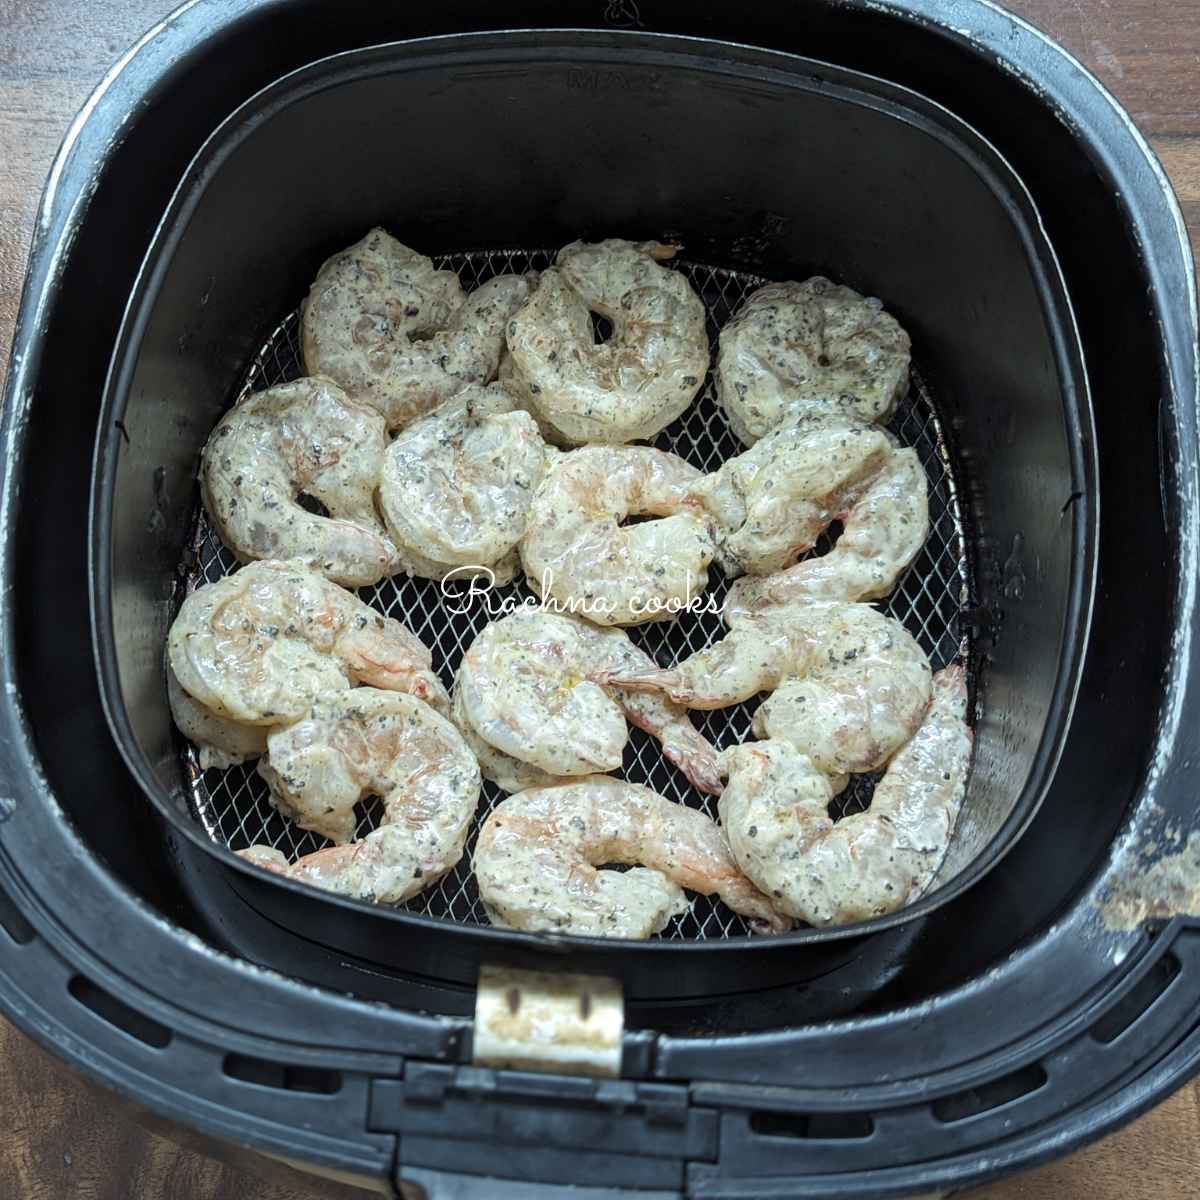 Coated shrimp placed in air fryer basket